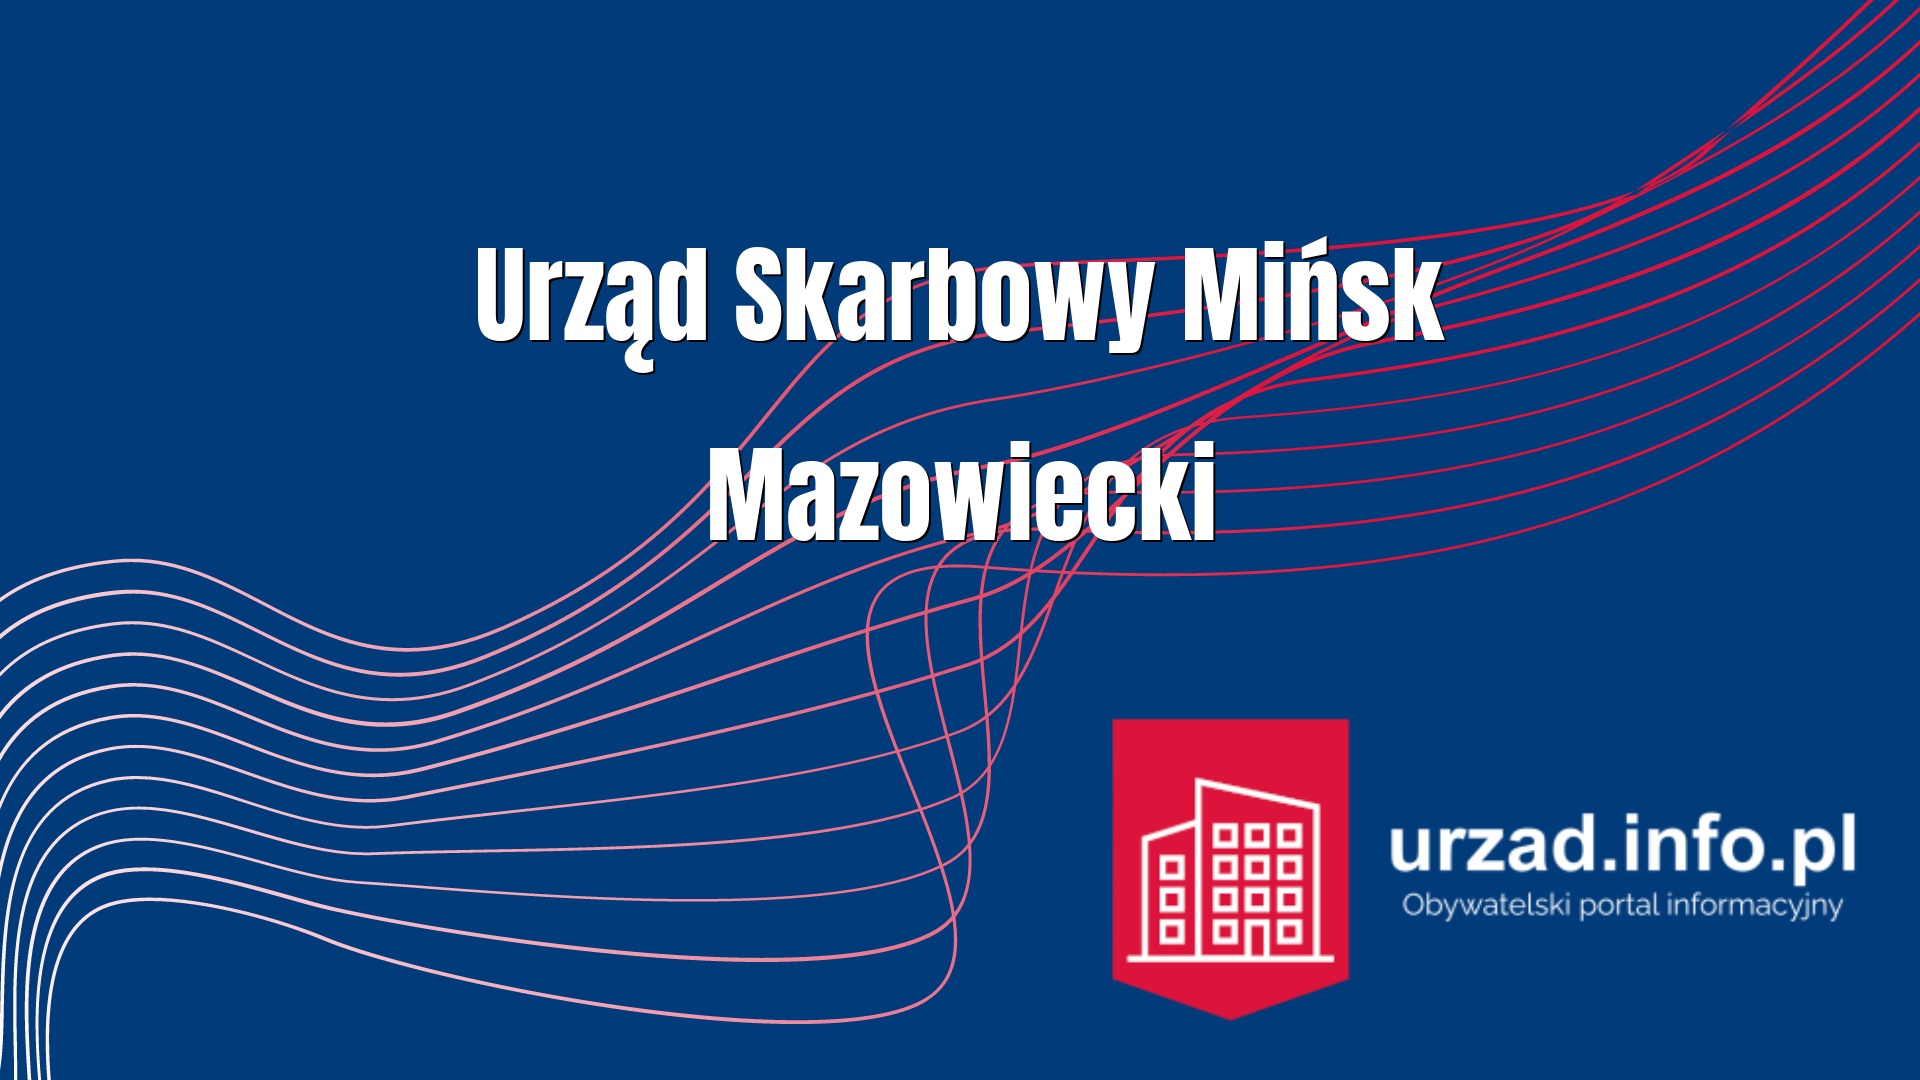 Urząd Skarbowy Mińsk Mazowiecki